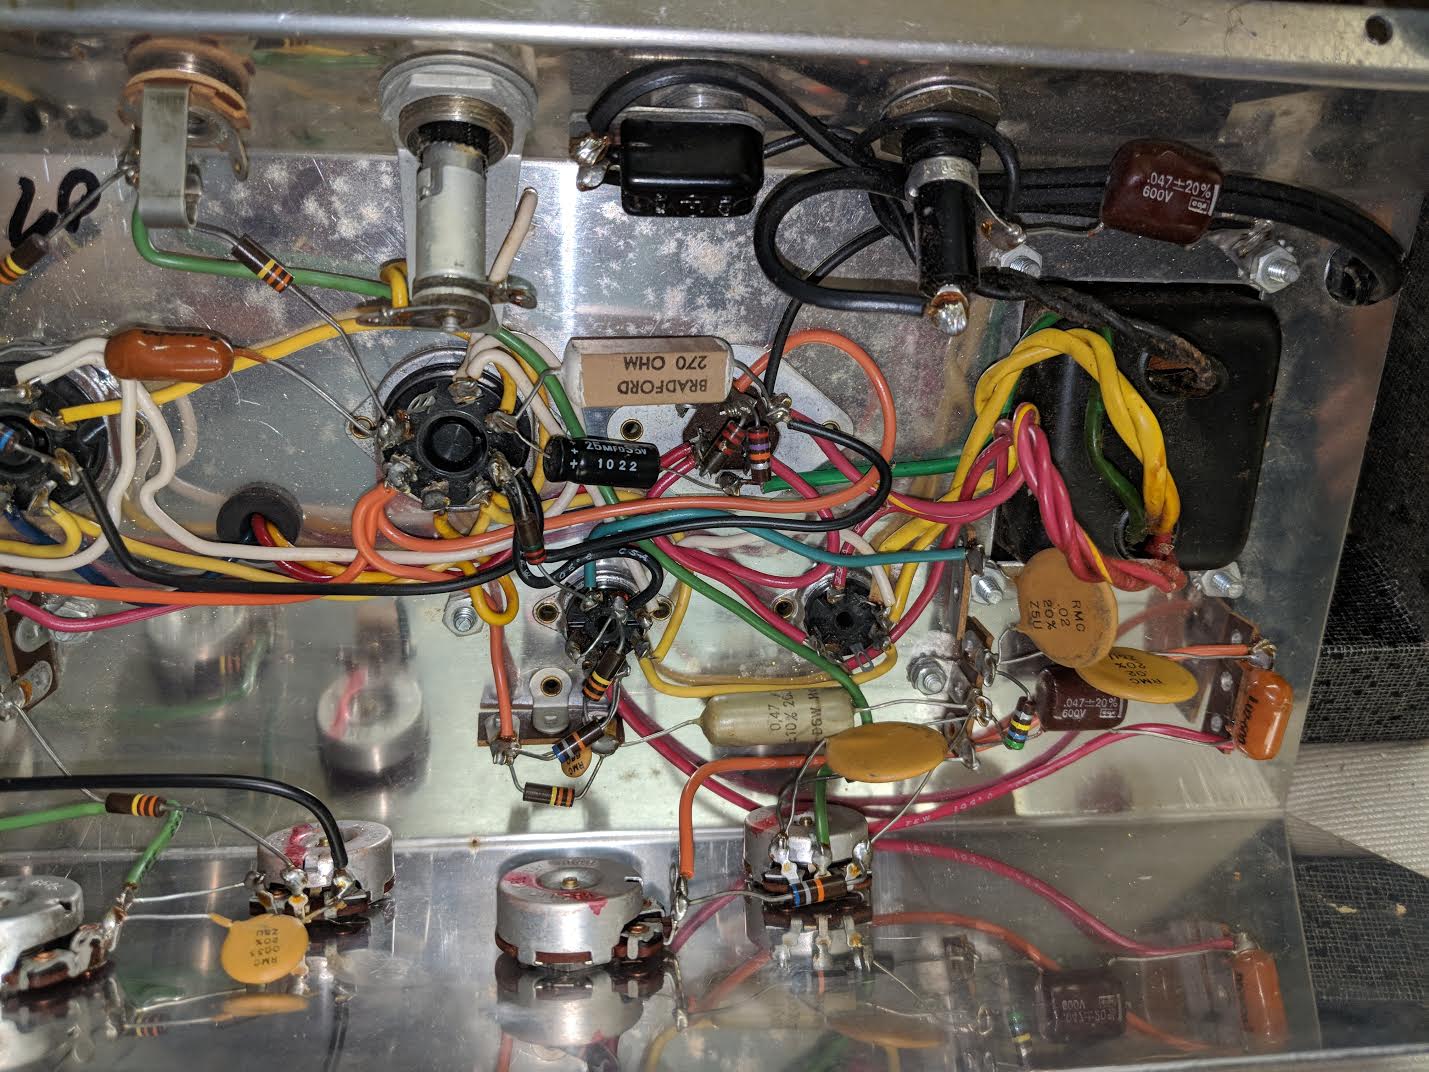 1967 Silvertone 1482 Amplifier